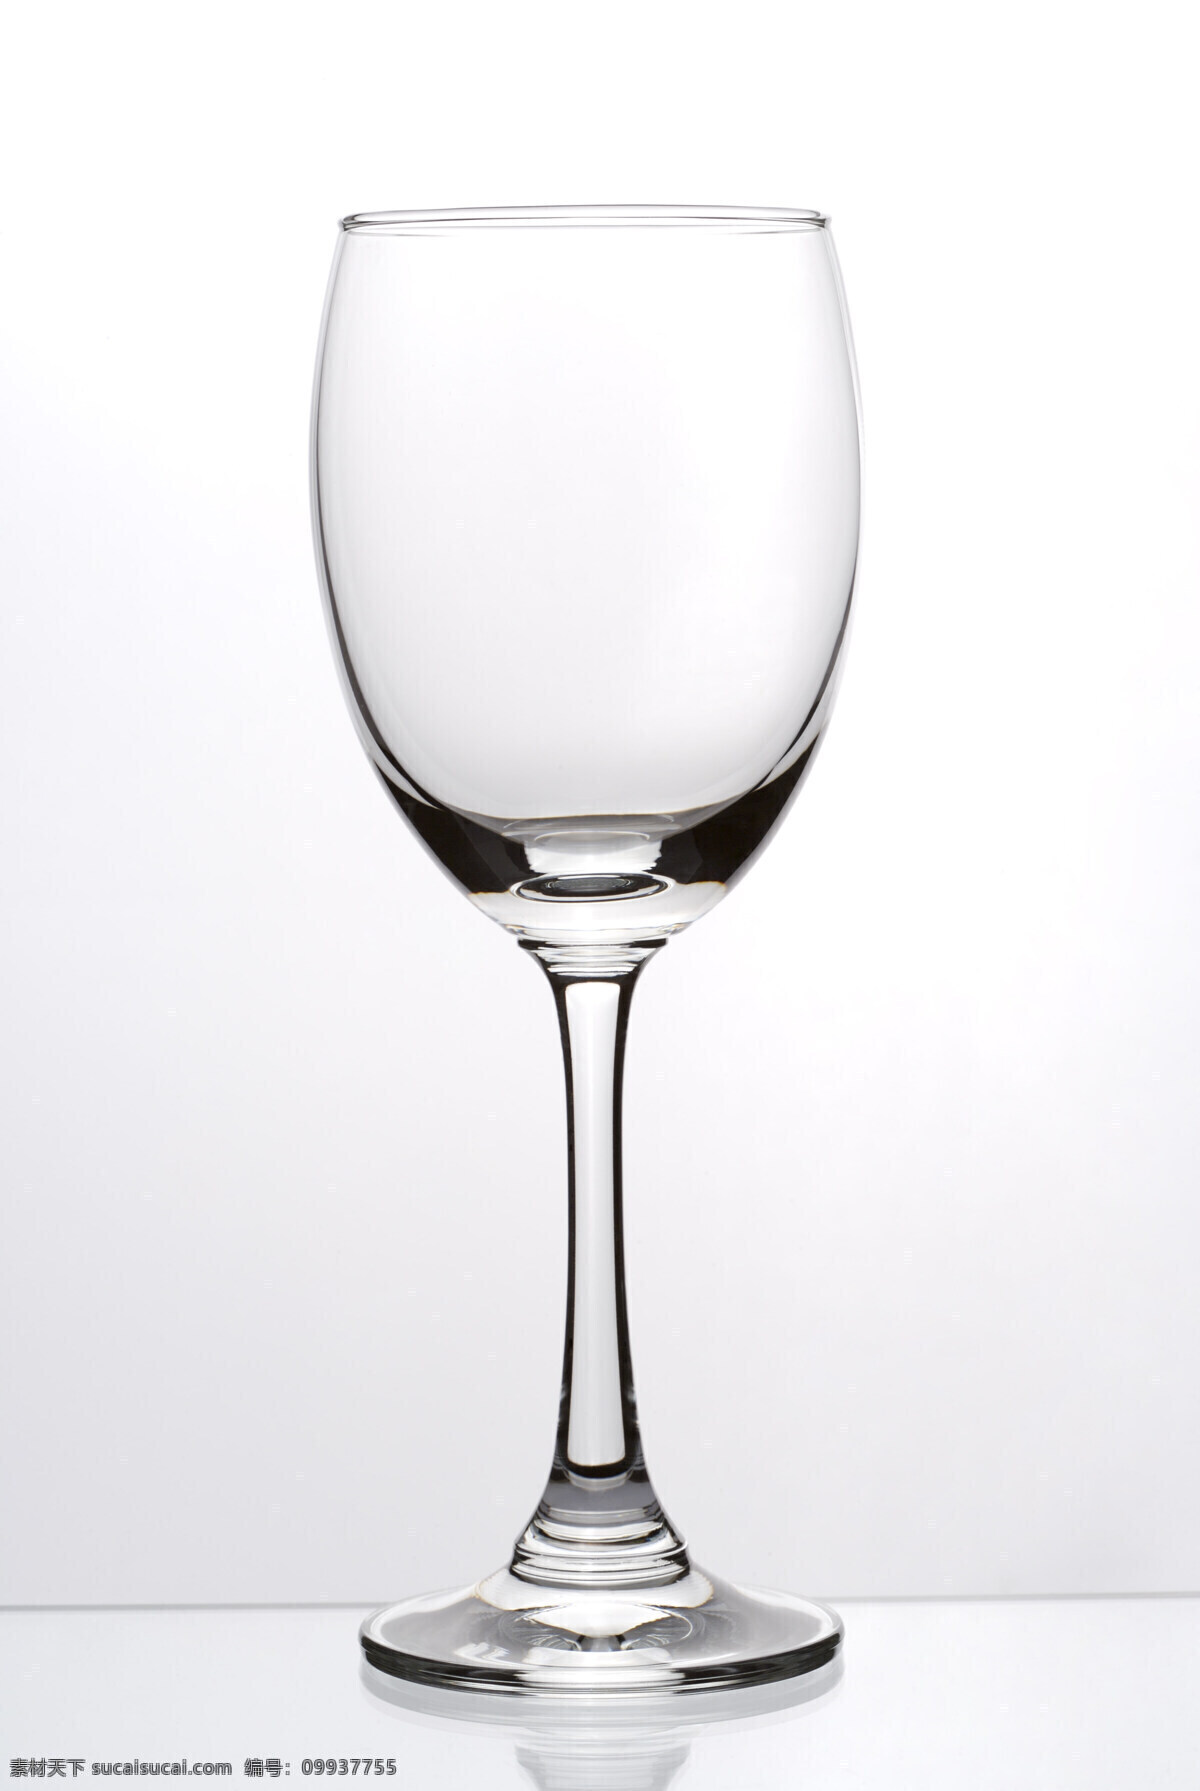 透明 空 高脚杯 玻璃杯 酒杯 空高脚杯 空杯子 红酒杯 餐具厨具 餐饮美食